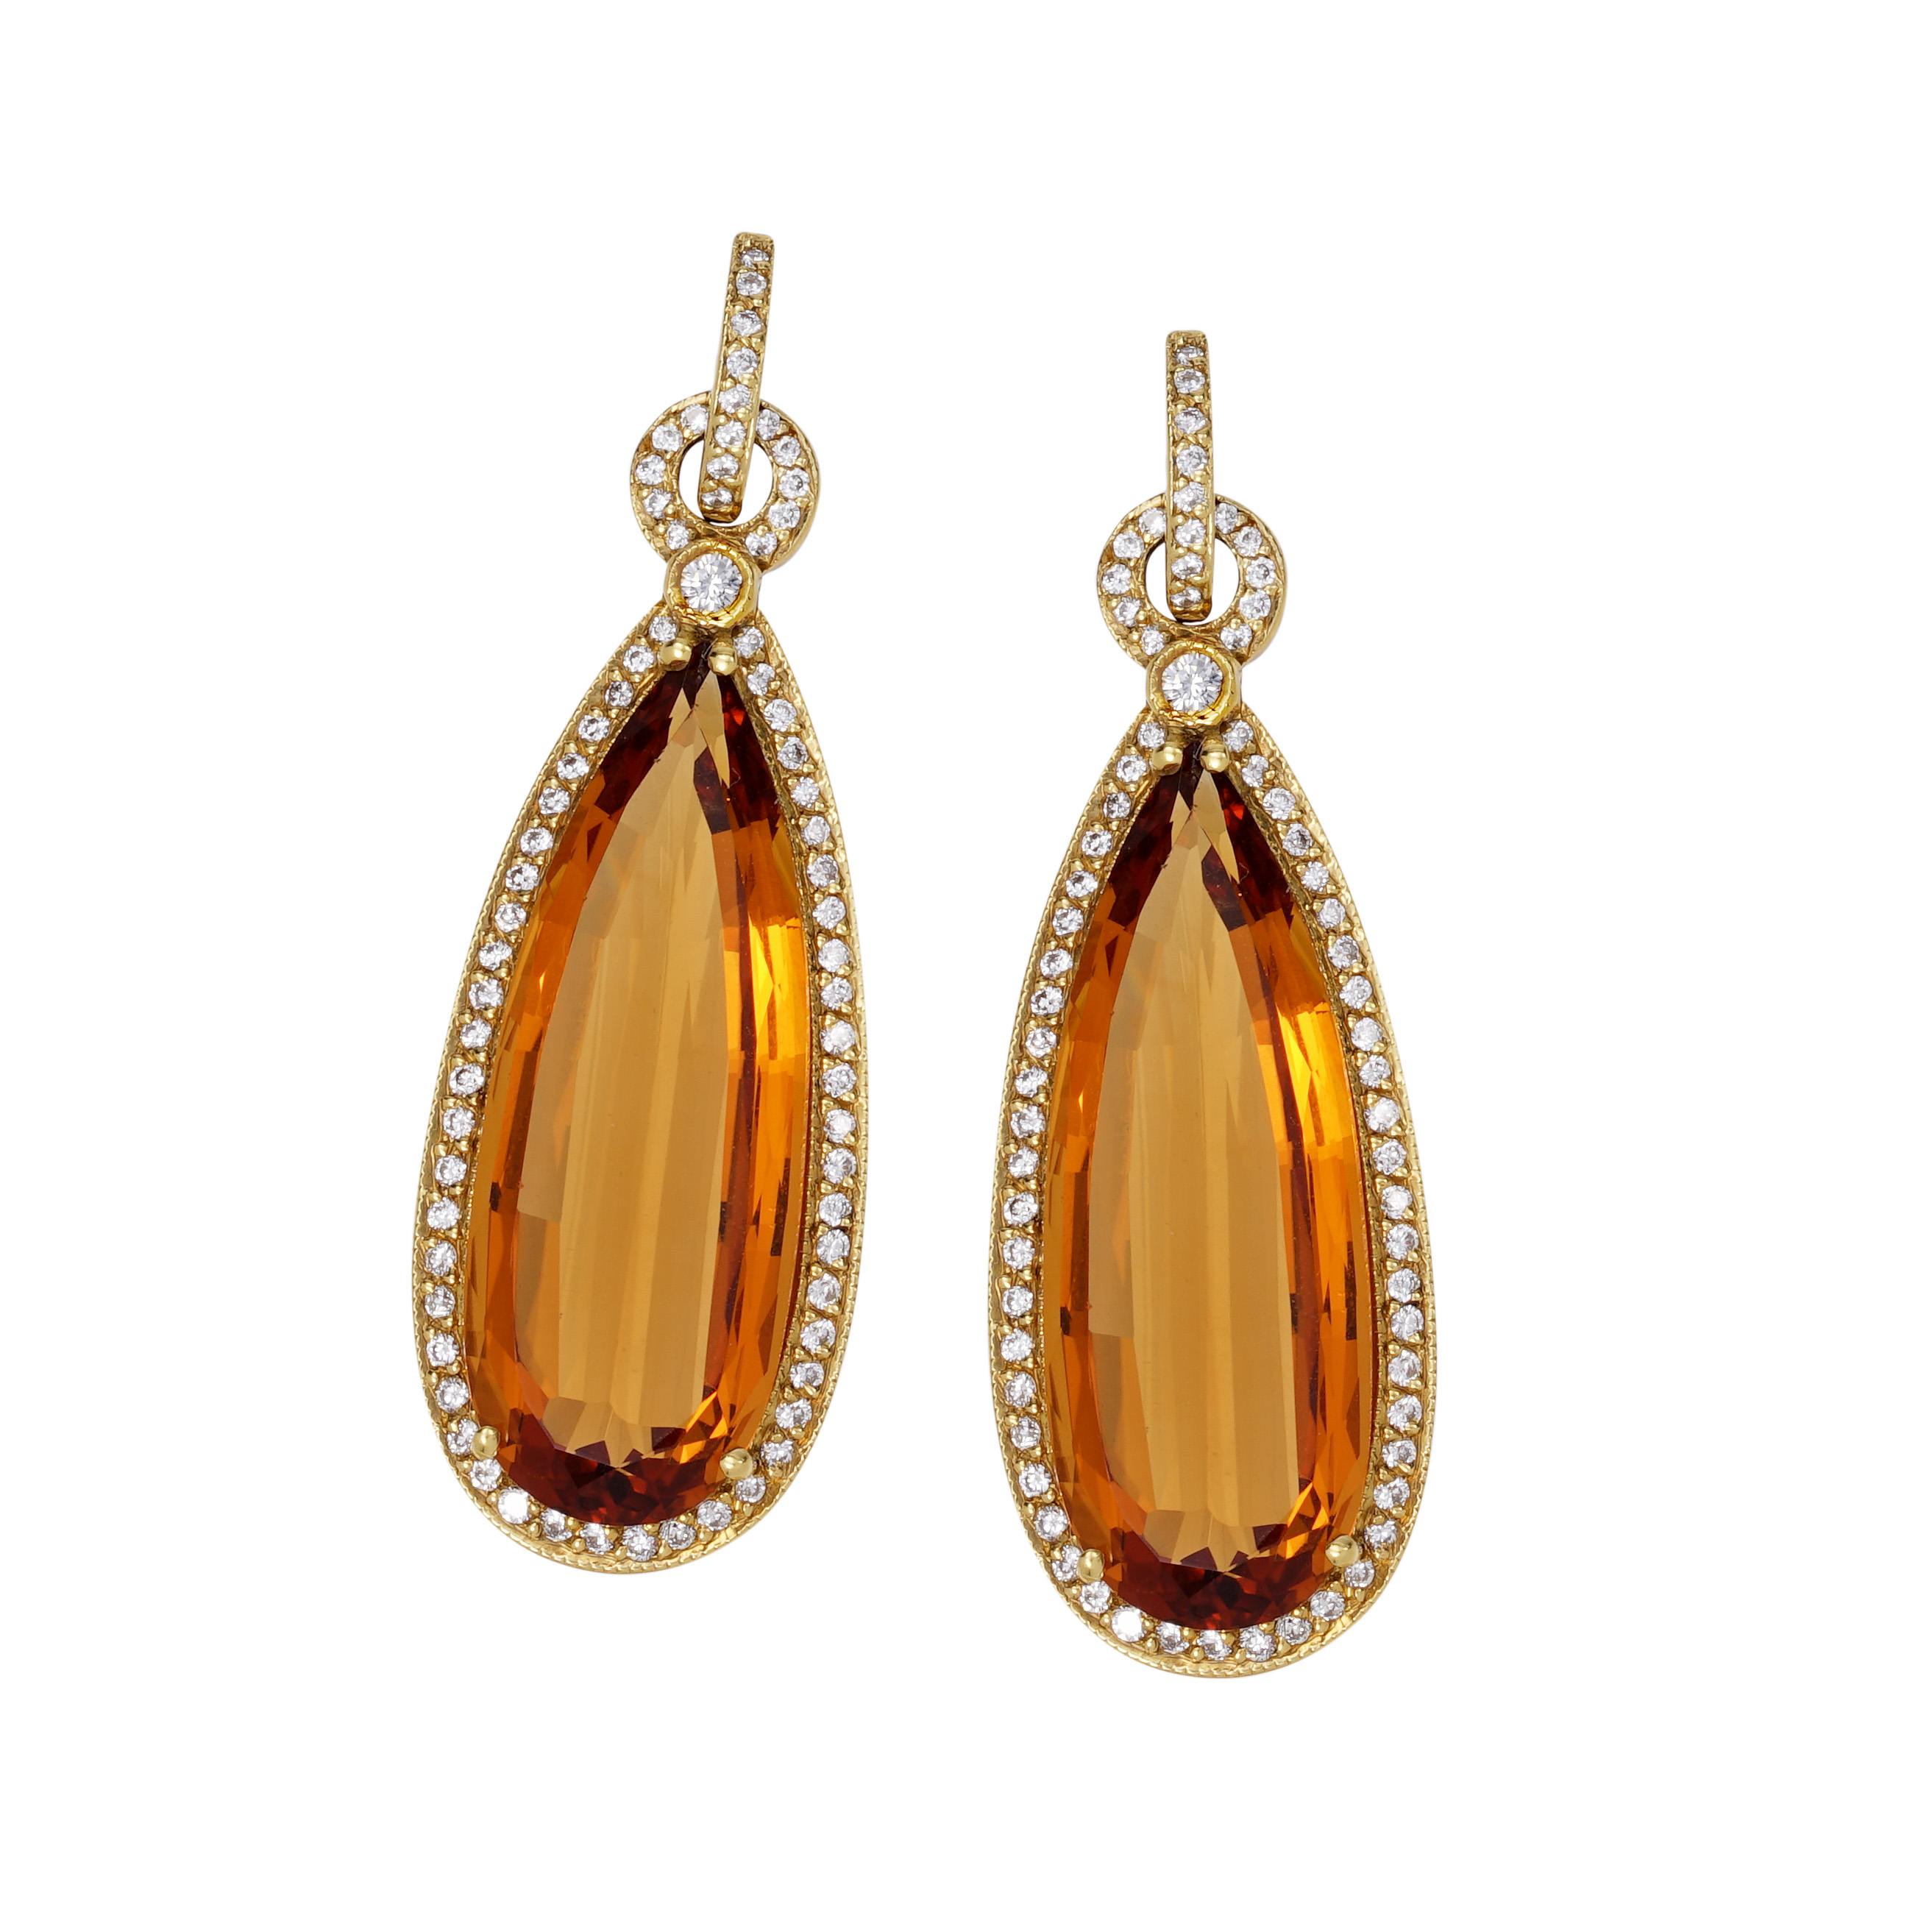 Gold Crystal tear drop earrings